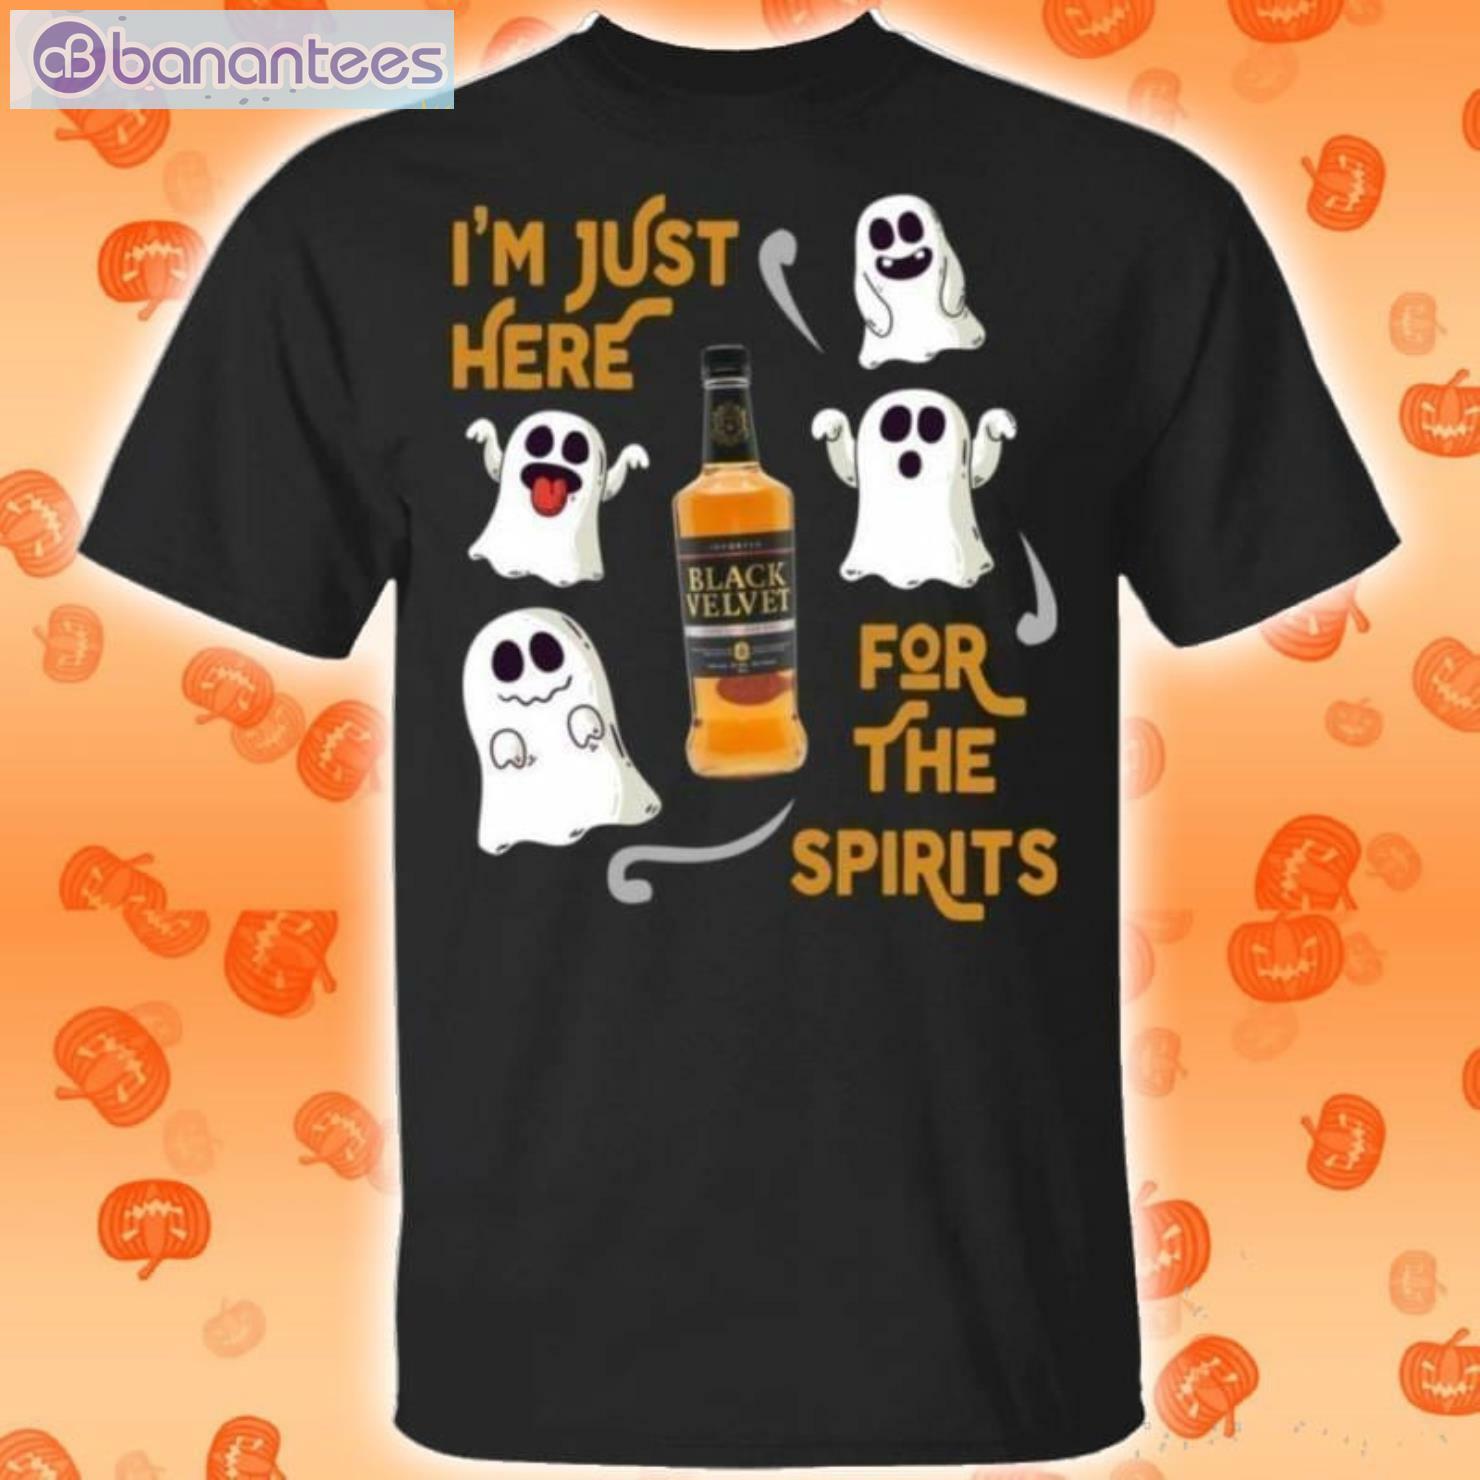 I'm Just Here For The Spirits Black Velvet Whisky Halloween T-Shirt Product Photo 1